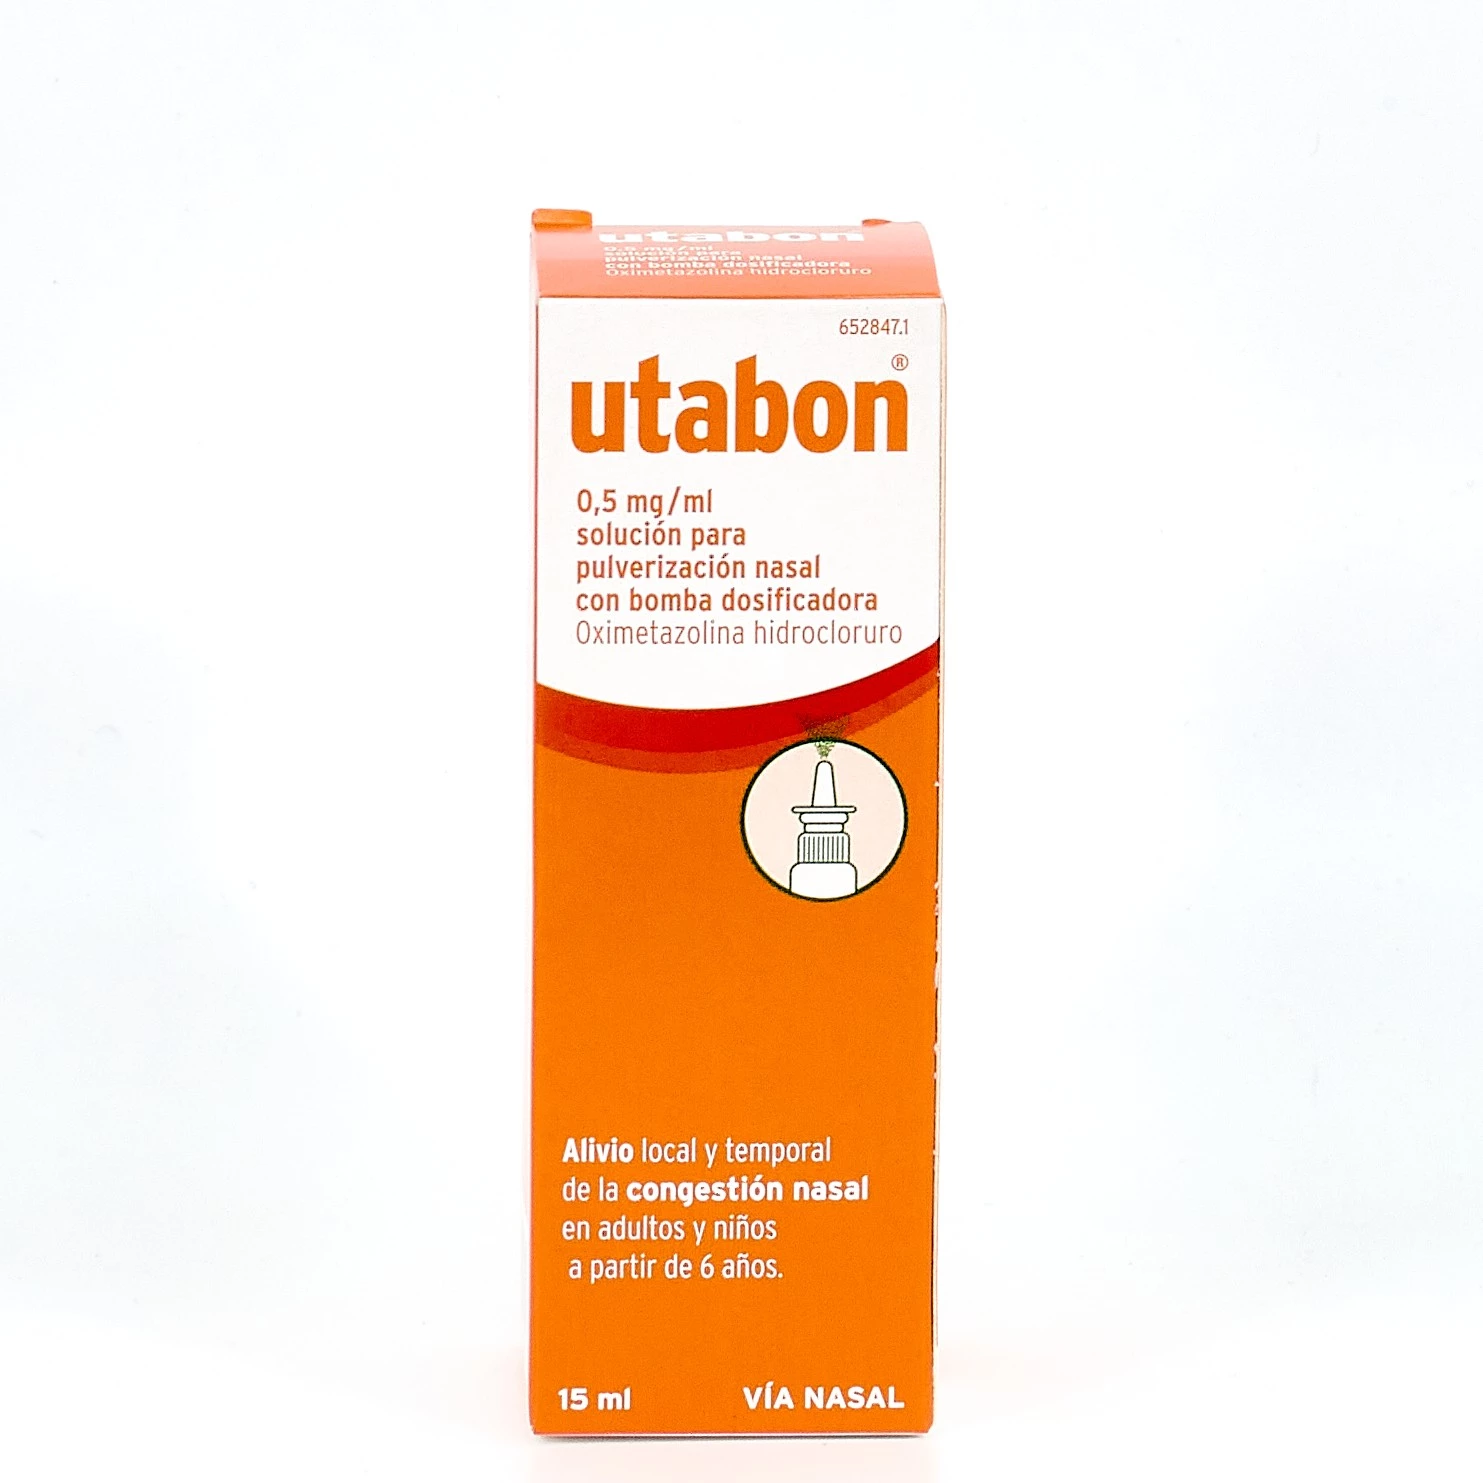 Utabon 0.5mg/ml pulverización nasal 15 ml con bomba dosificadora